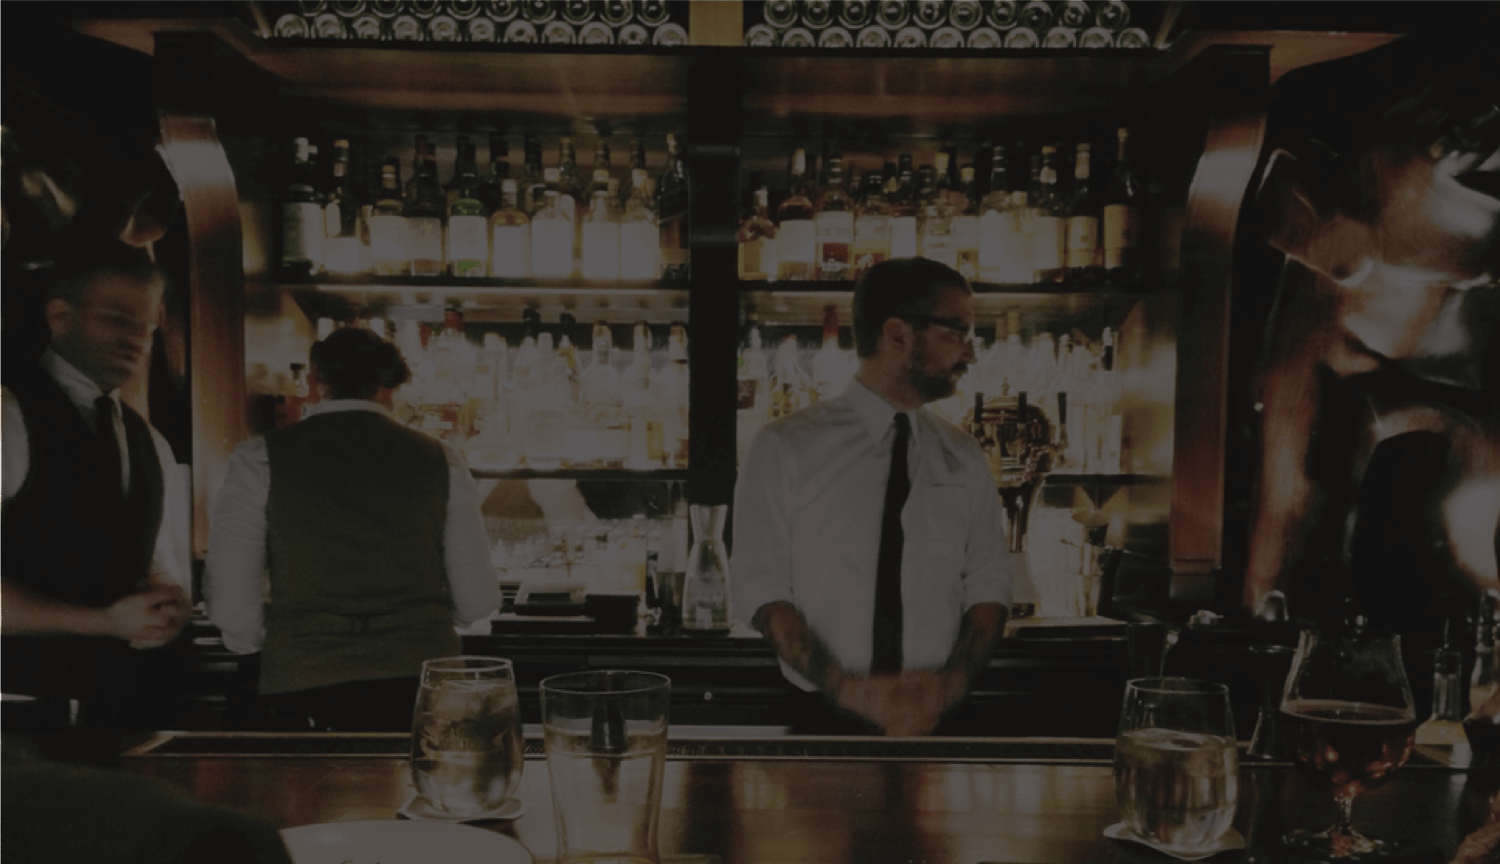 Bartenders behind bar